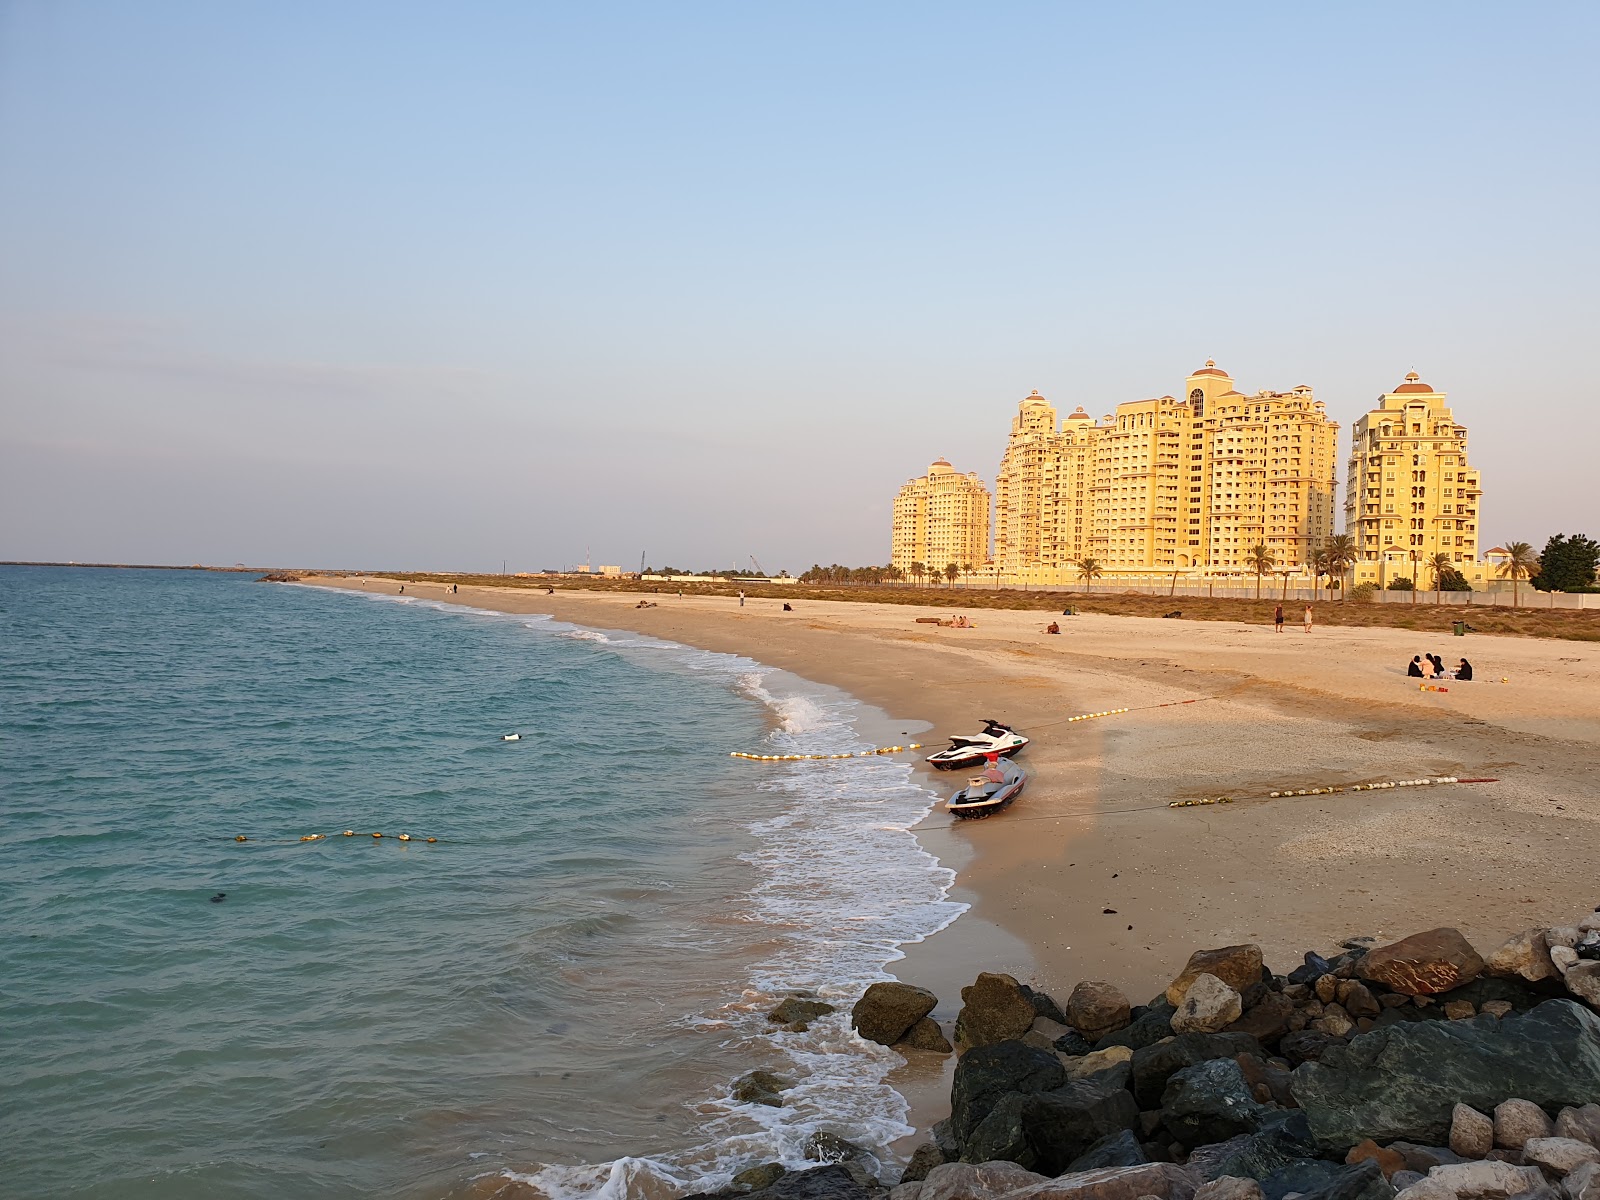 Al Jazeerah beach'in fotoğrafı geniş plaj ile birlikte